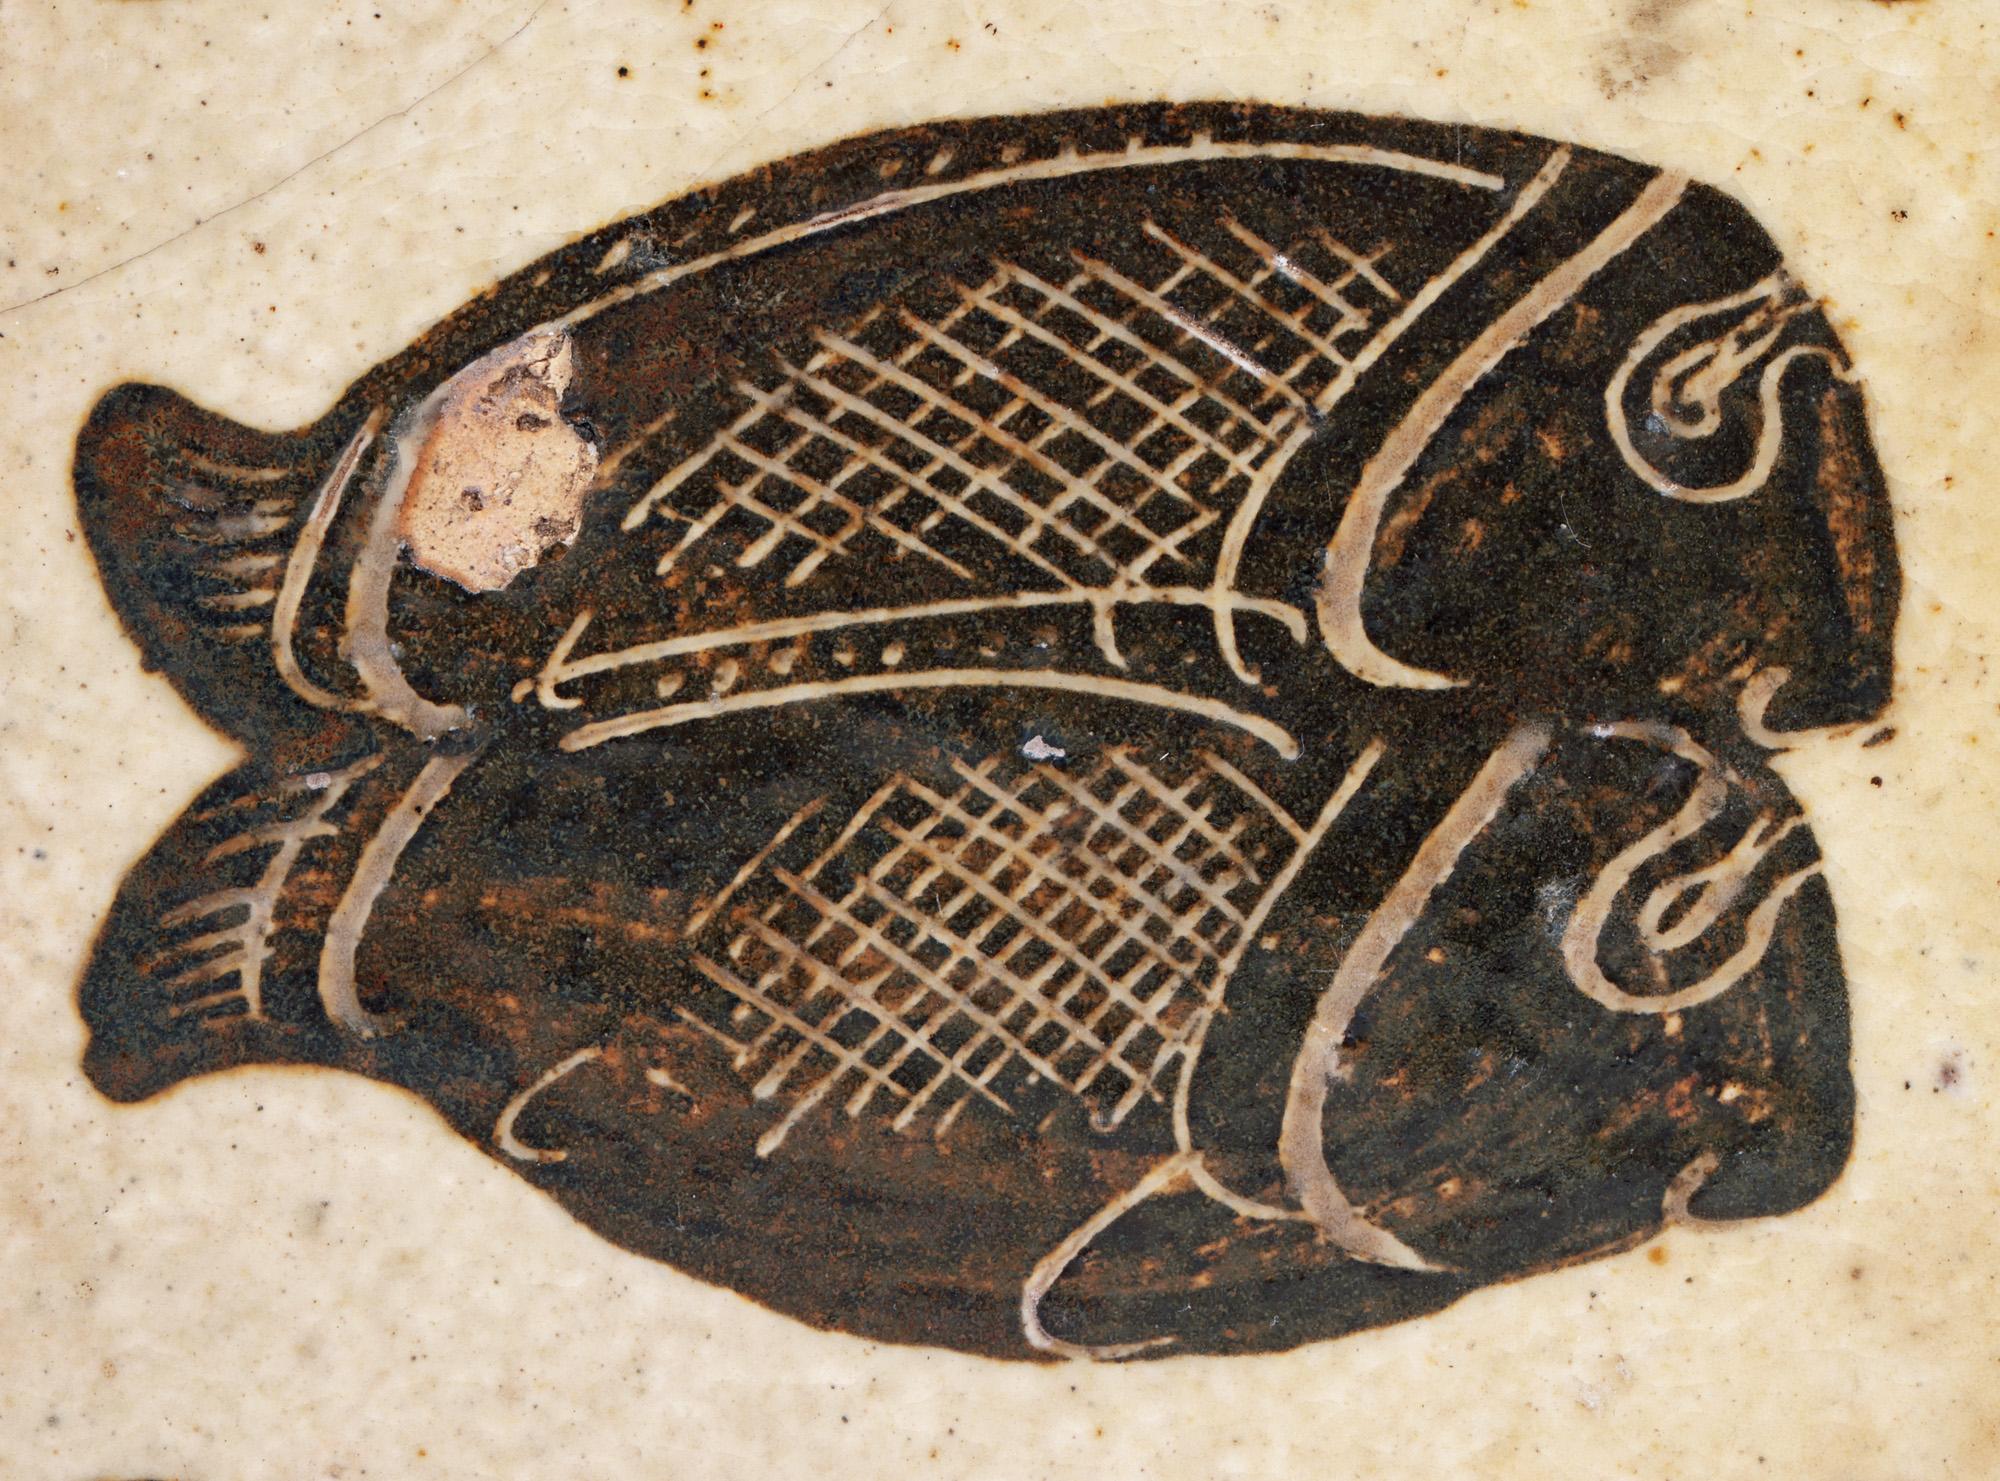 Eine seltene glasierte, handgefertigte Studio-Töpferfliese mit zwei Fischen des bekannten englischen Töpfers Bernard Leach CBE (Brite, 1887-1979), die in der Leach Pottery in St. Ives, Cornwall, hergestellt und auf 1933 datiert wurde. Die